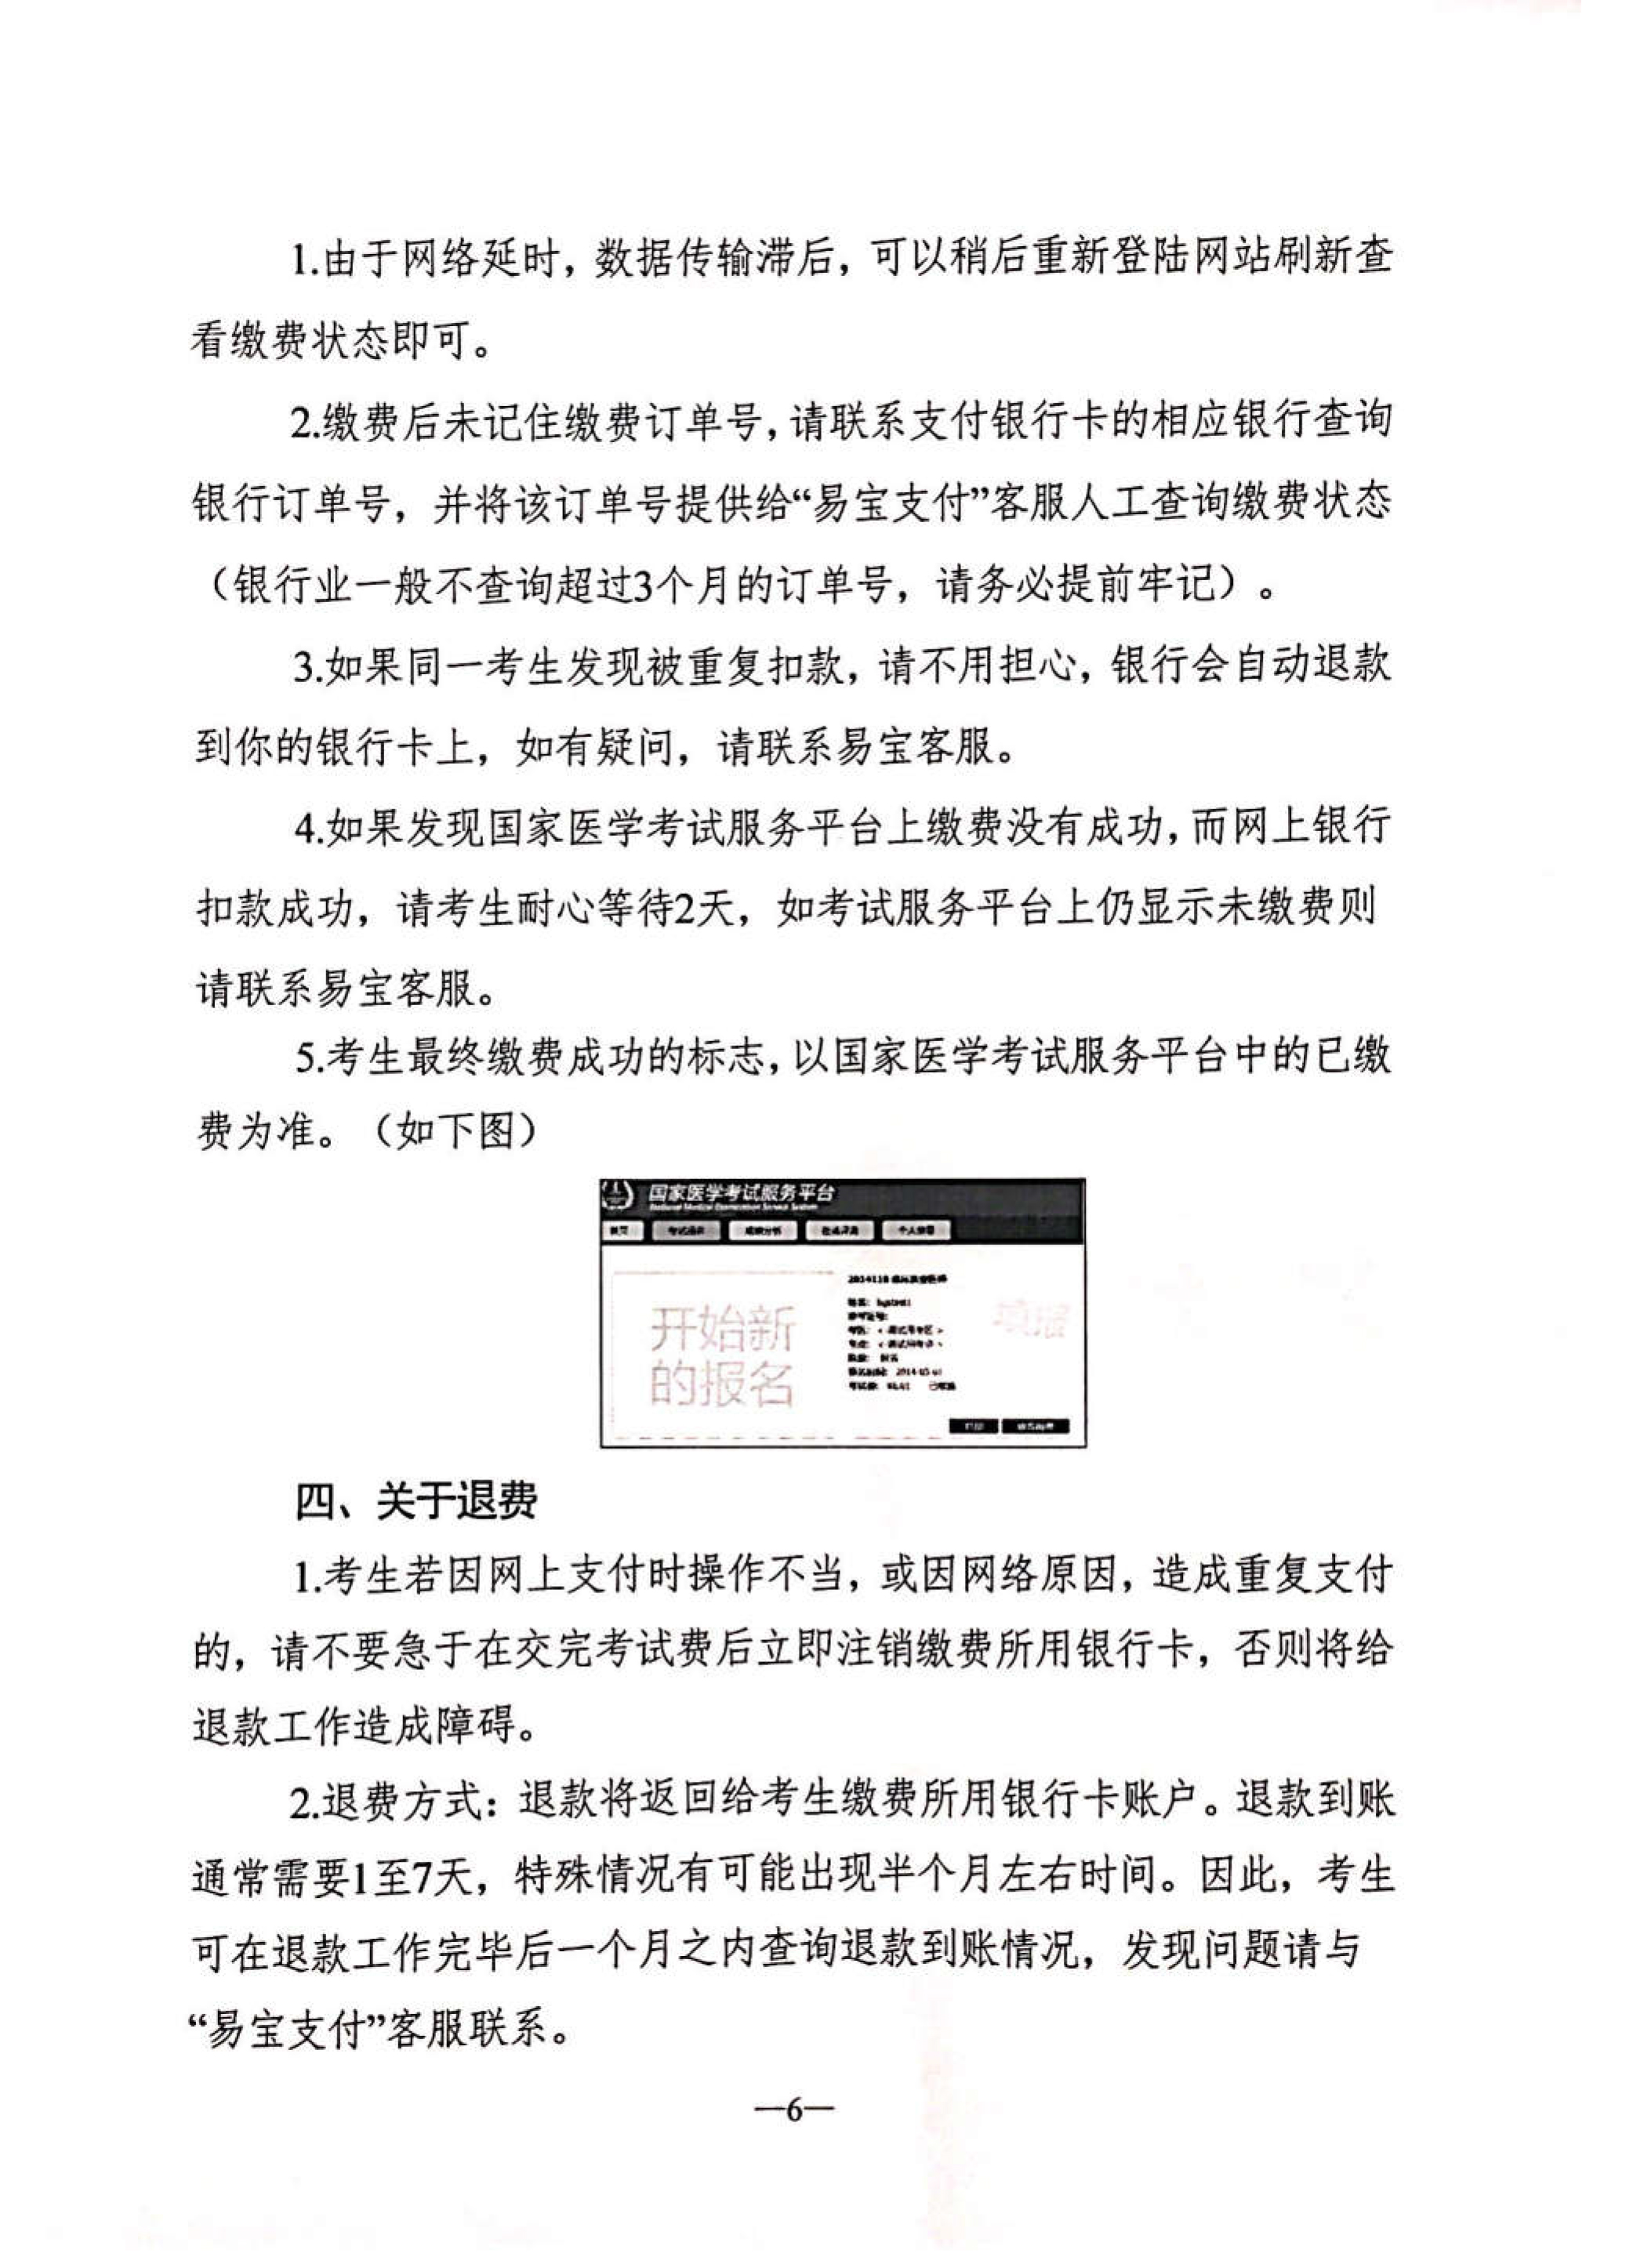 江苏省2019年执业医师考试收费标准已公布